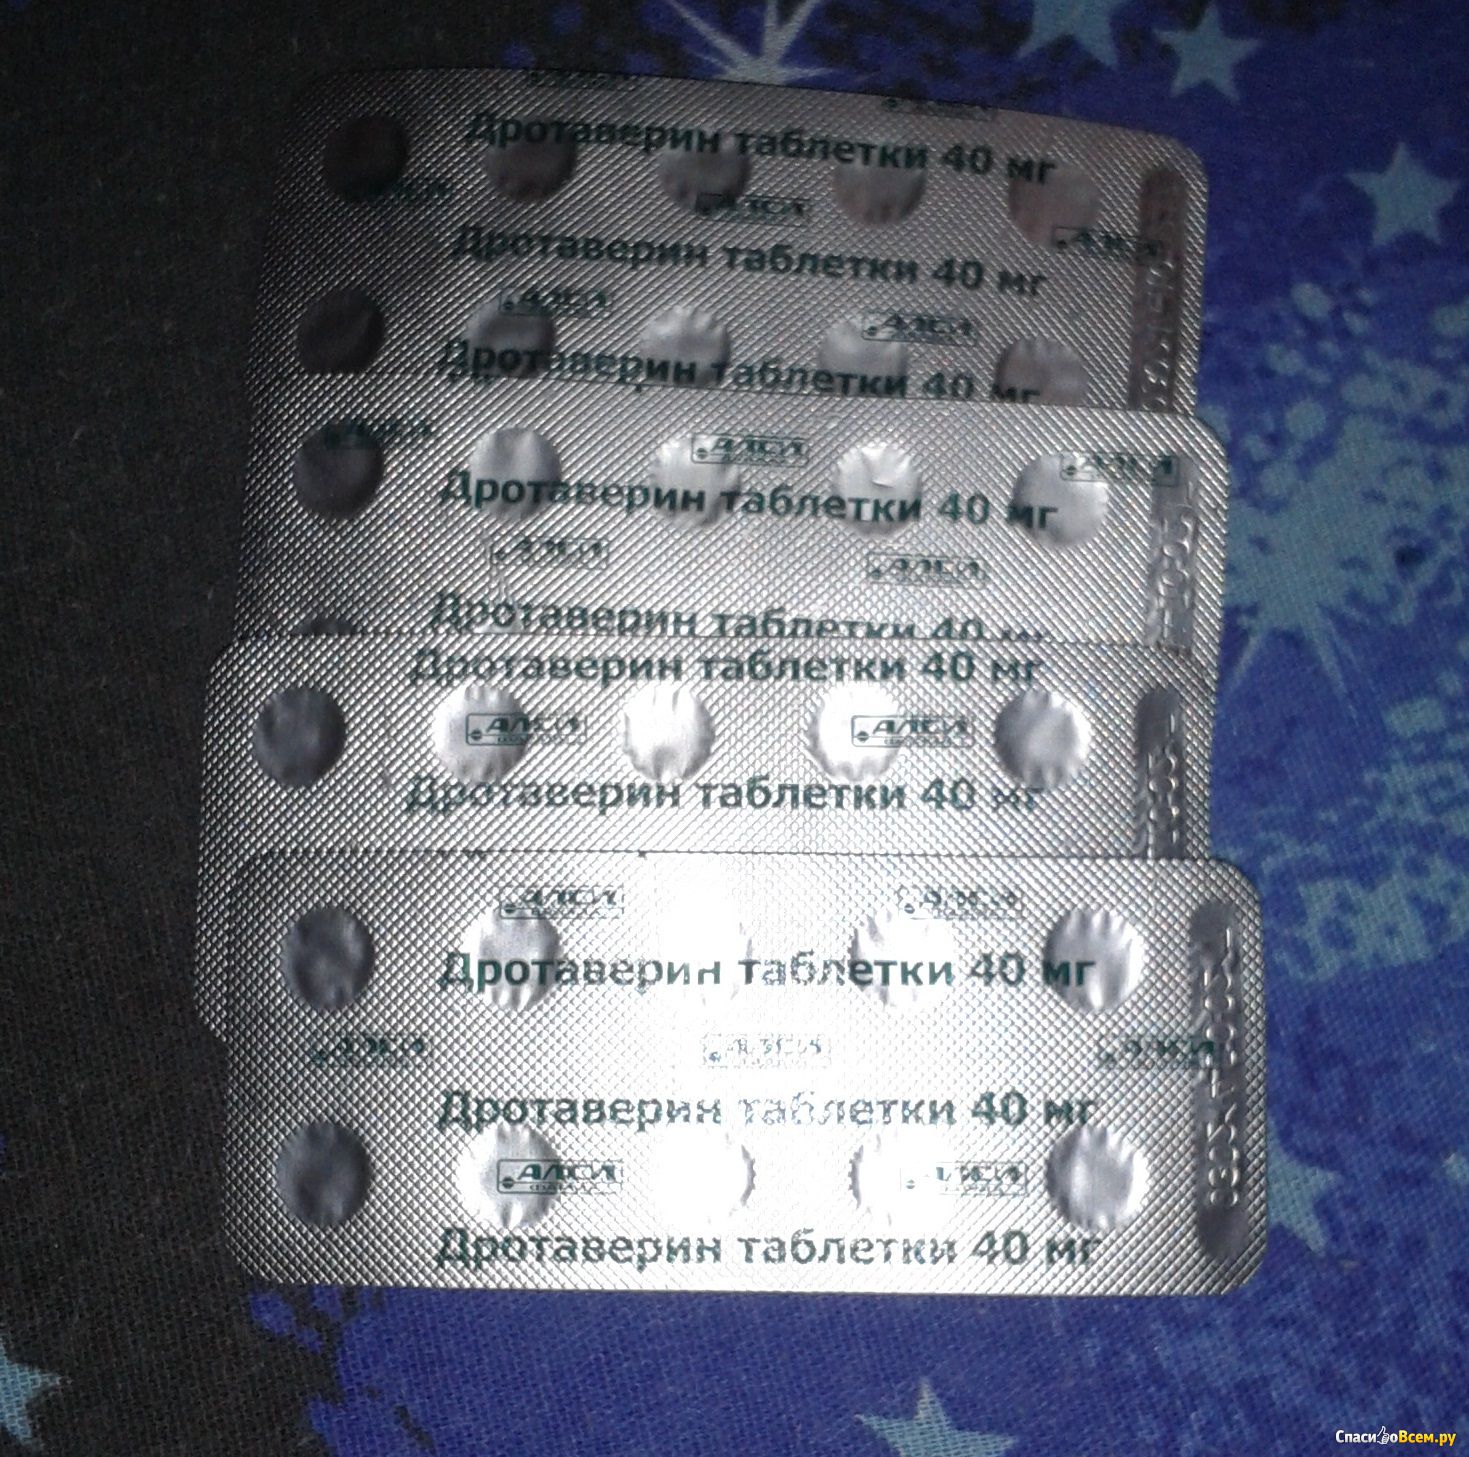 Дротаверин таблетки